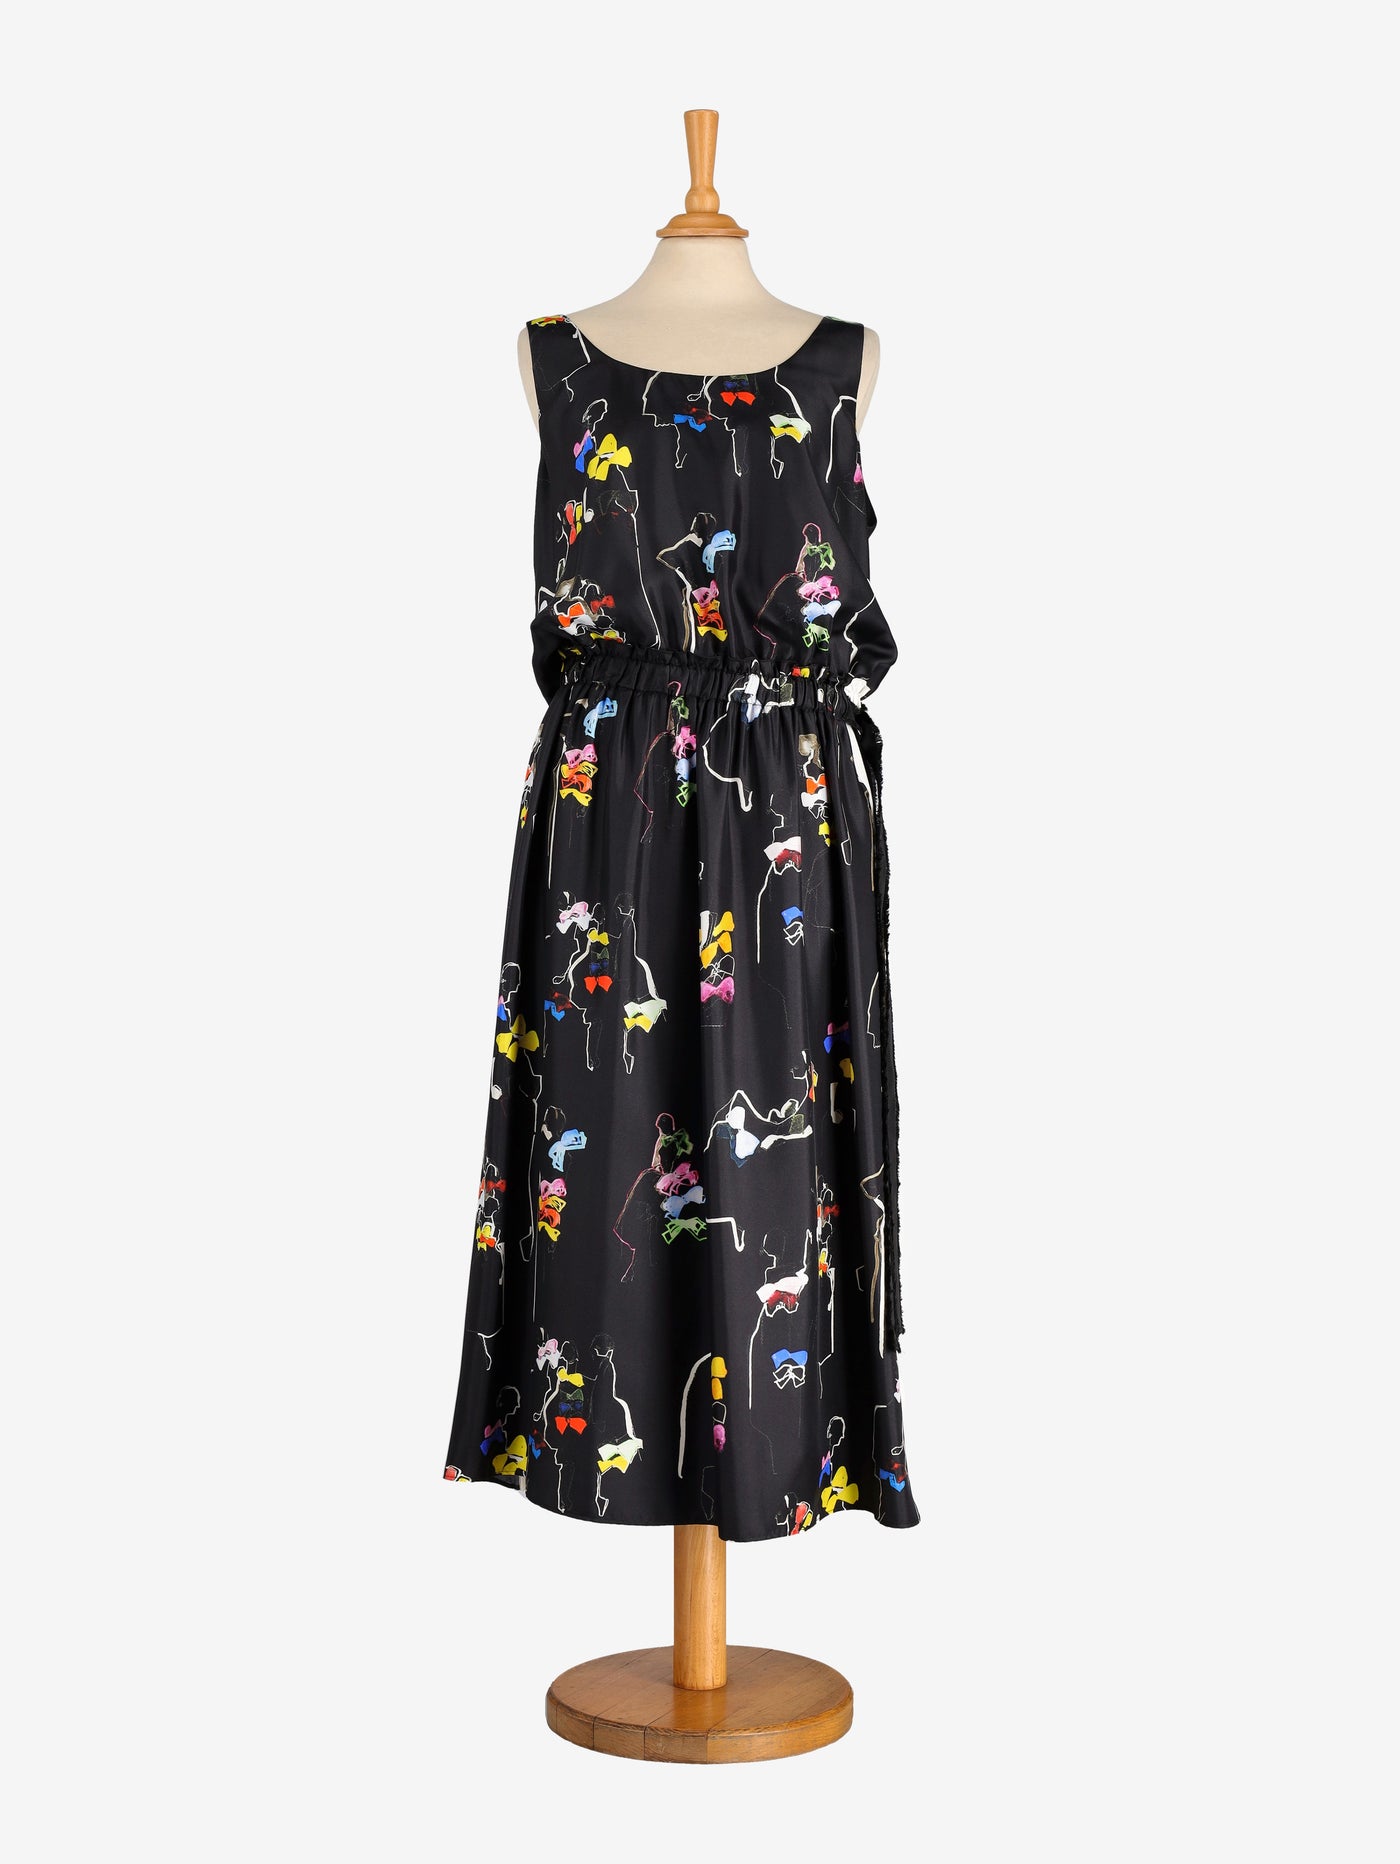 N°21 Patterned Silk Midi Dress - 00s